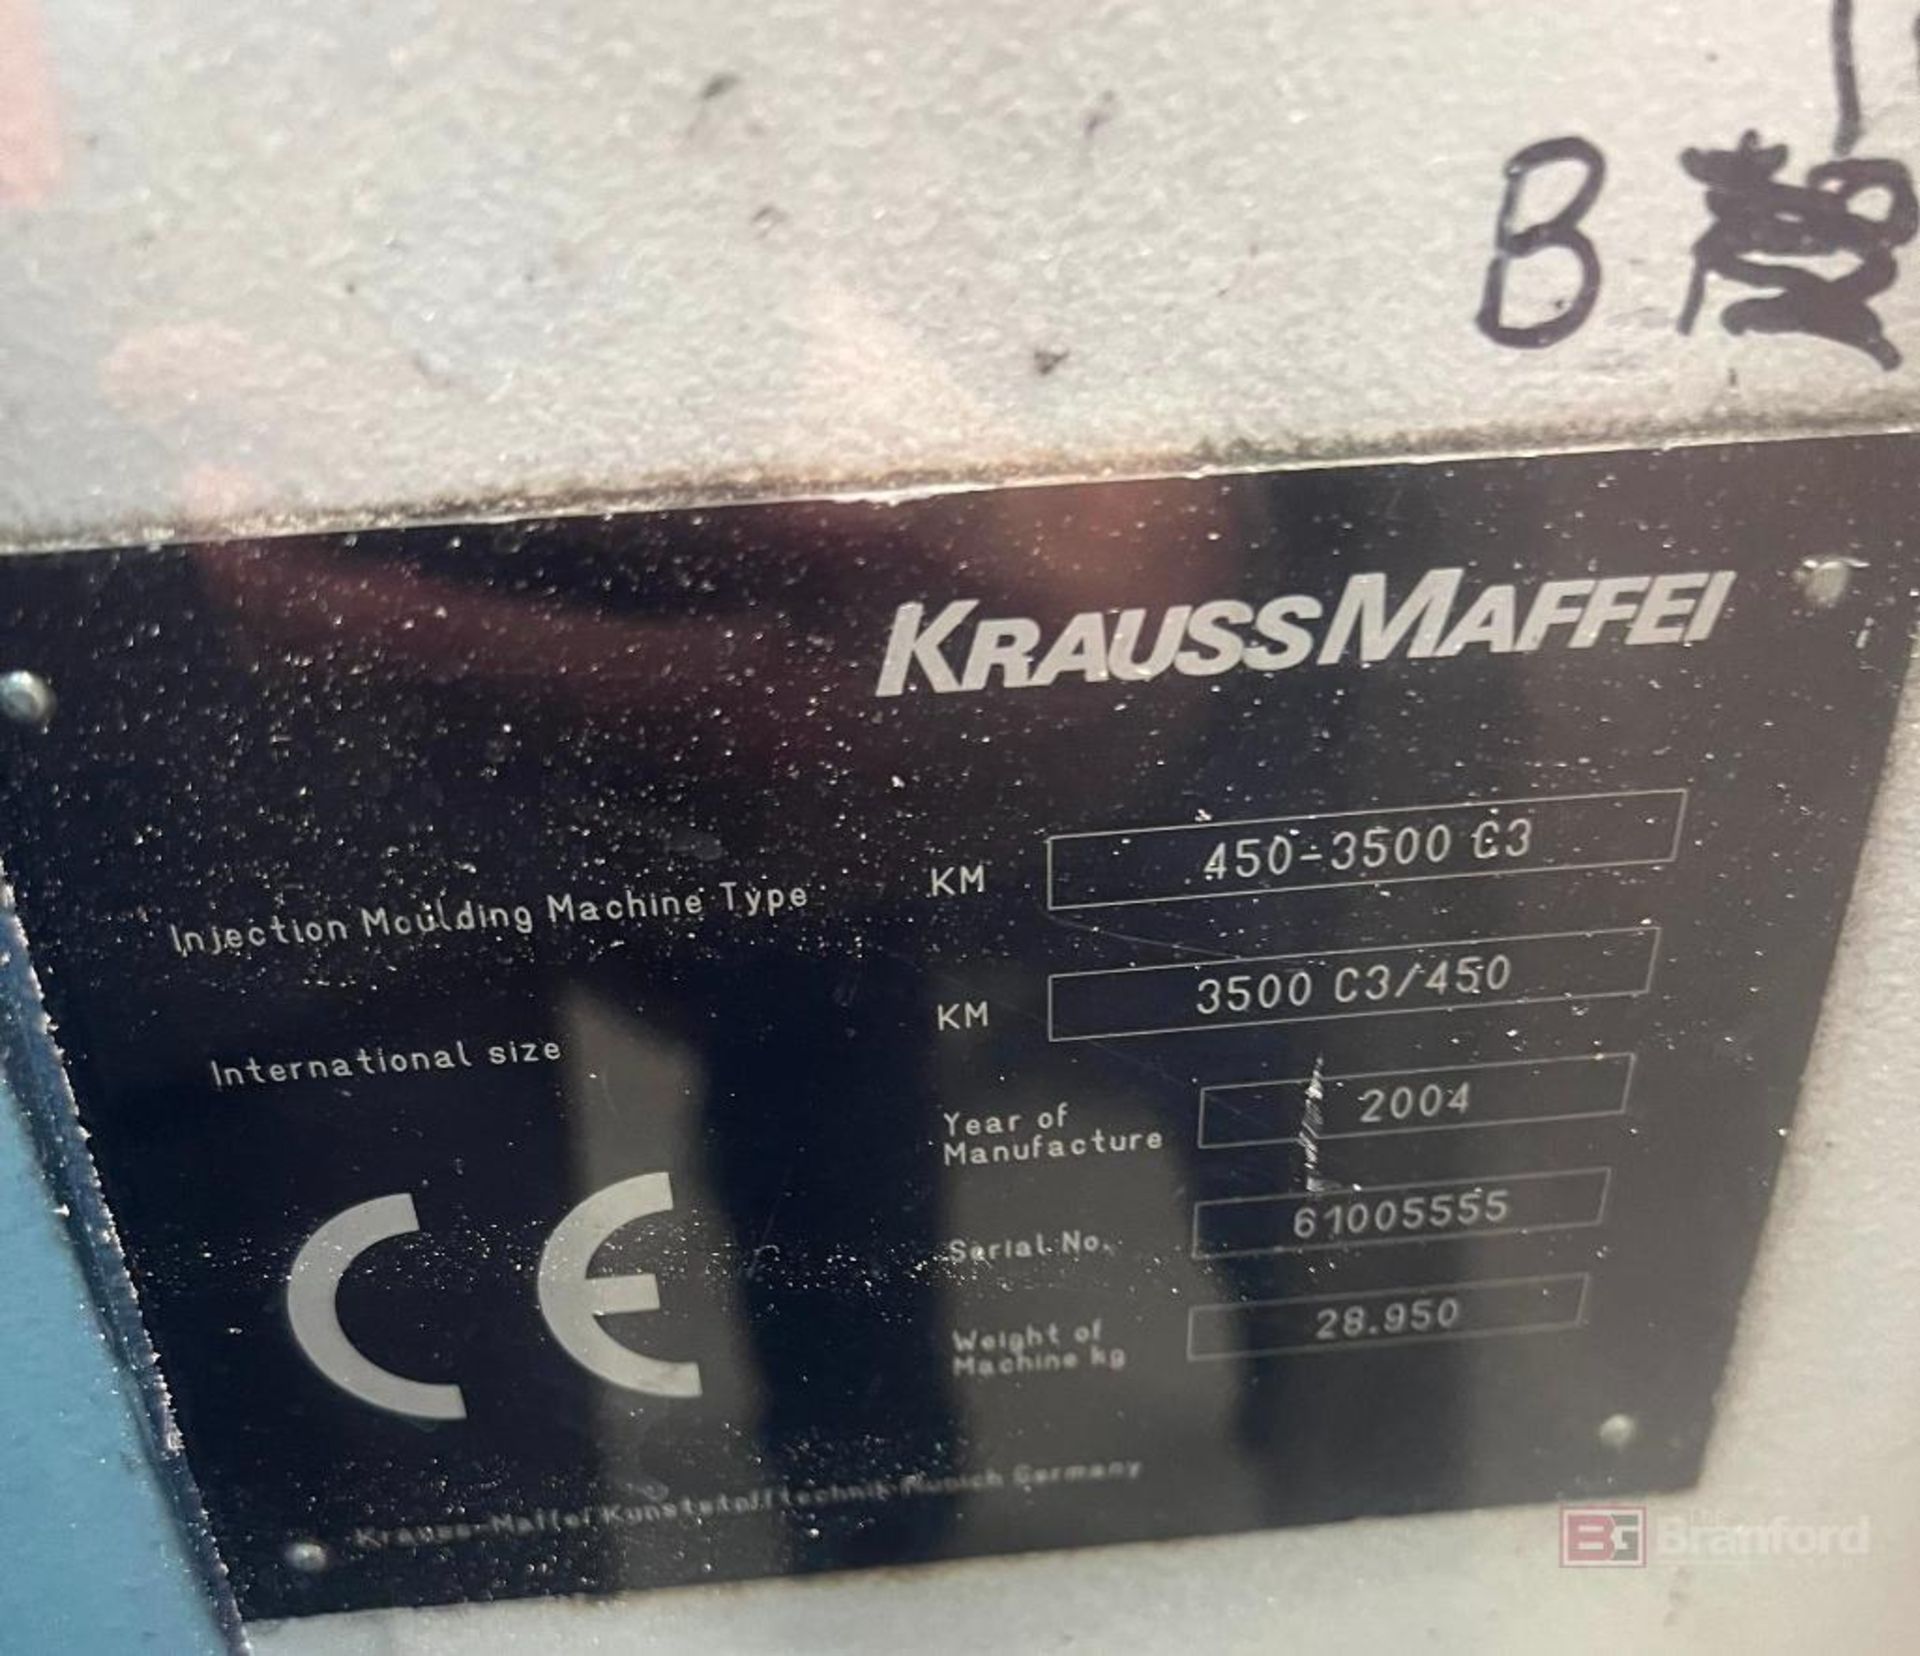 Krauss Maffei KM450-3500 C3 Injection Molding Machine - Image 4 of 4